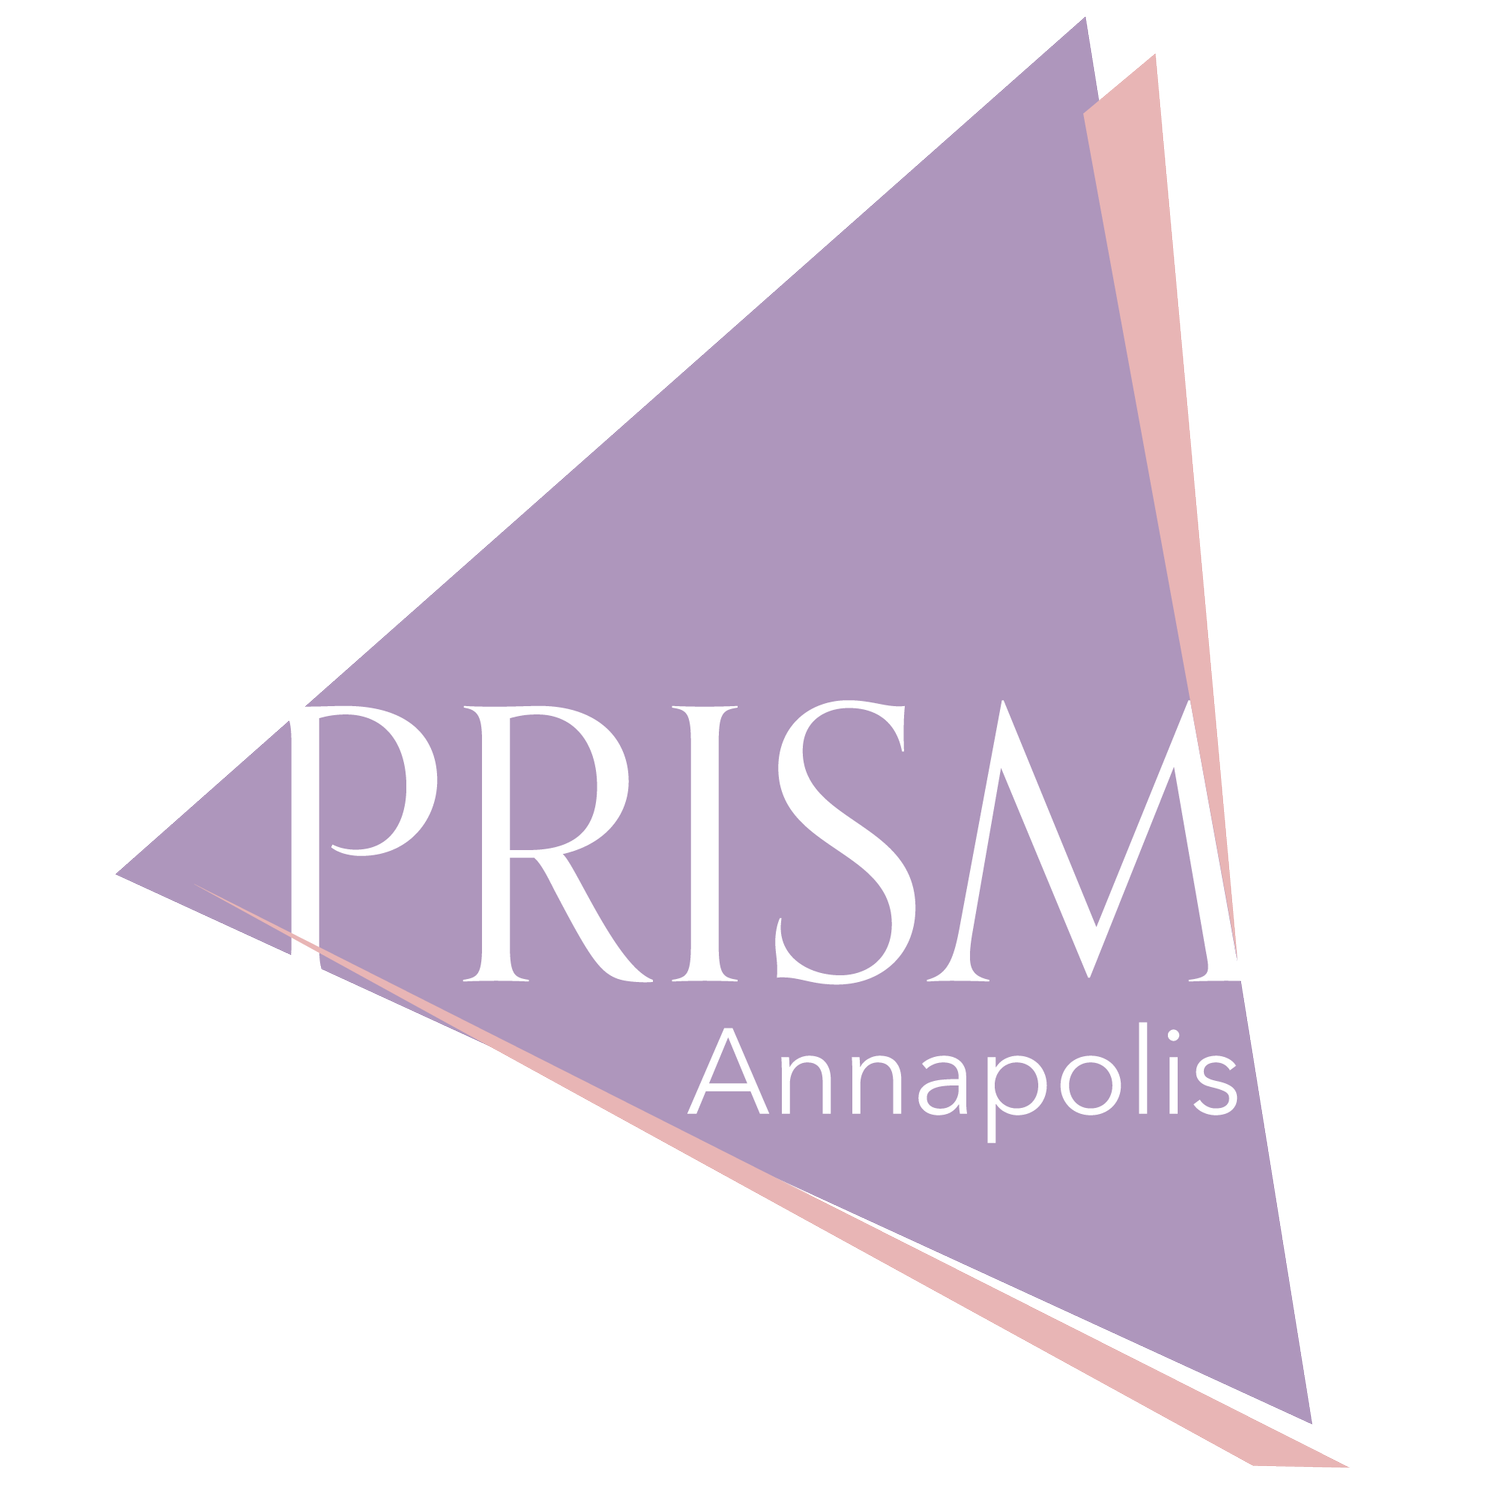 Prism Annapolis